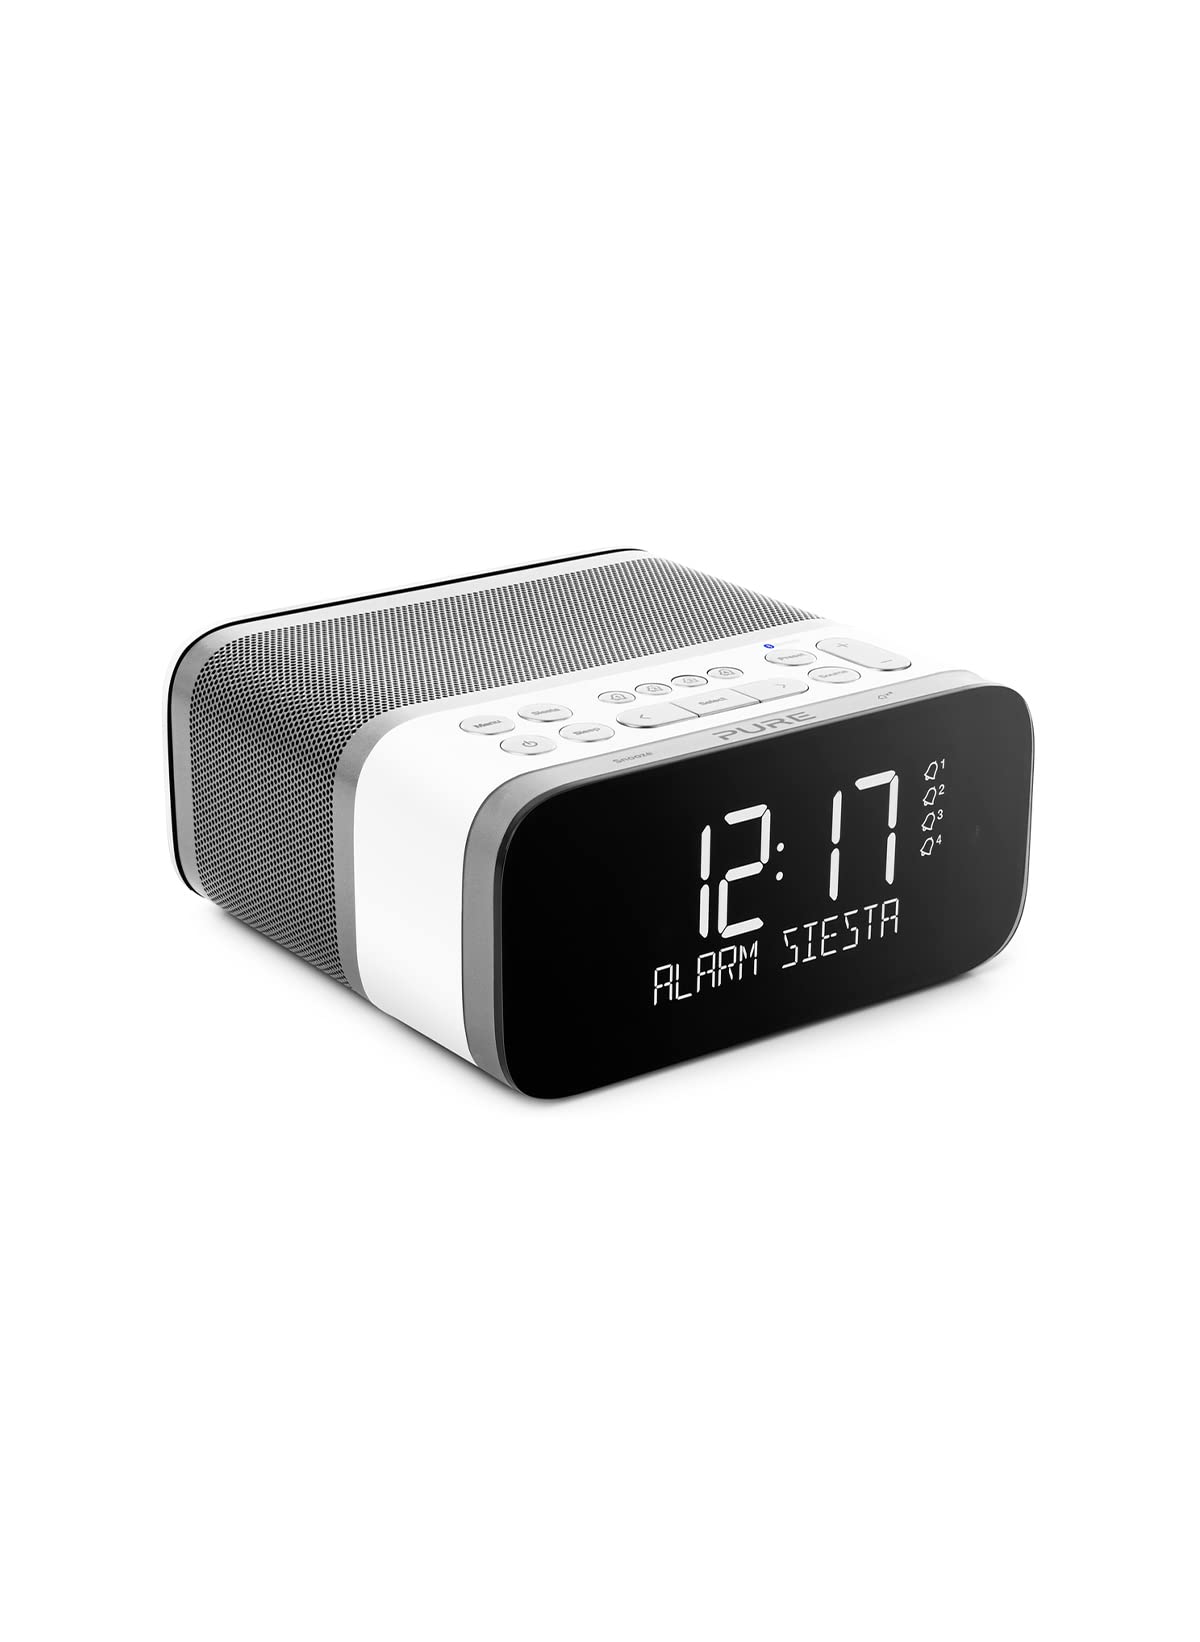 Pure Siesta S6 Bluetooth Radiowecker (Digitalradio, CrystalVue Display, Bluetooth, DAB/DAB+ und UKW, 40 Senderspeicherplätze, Sleep-Timer und Weckfunktion), Polar